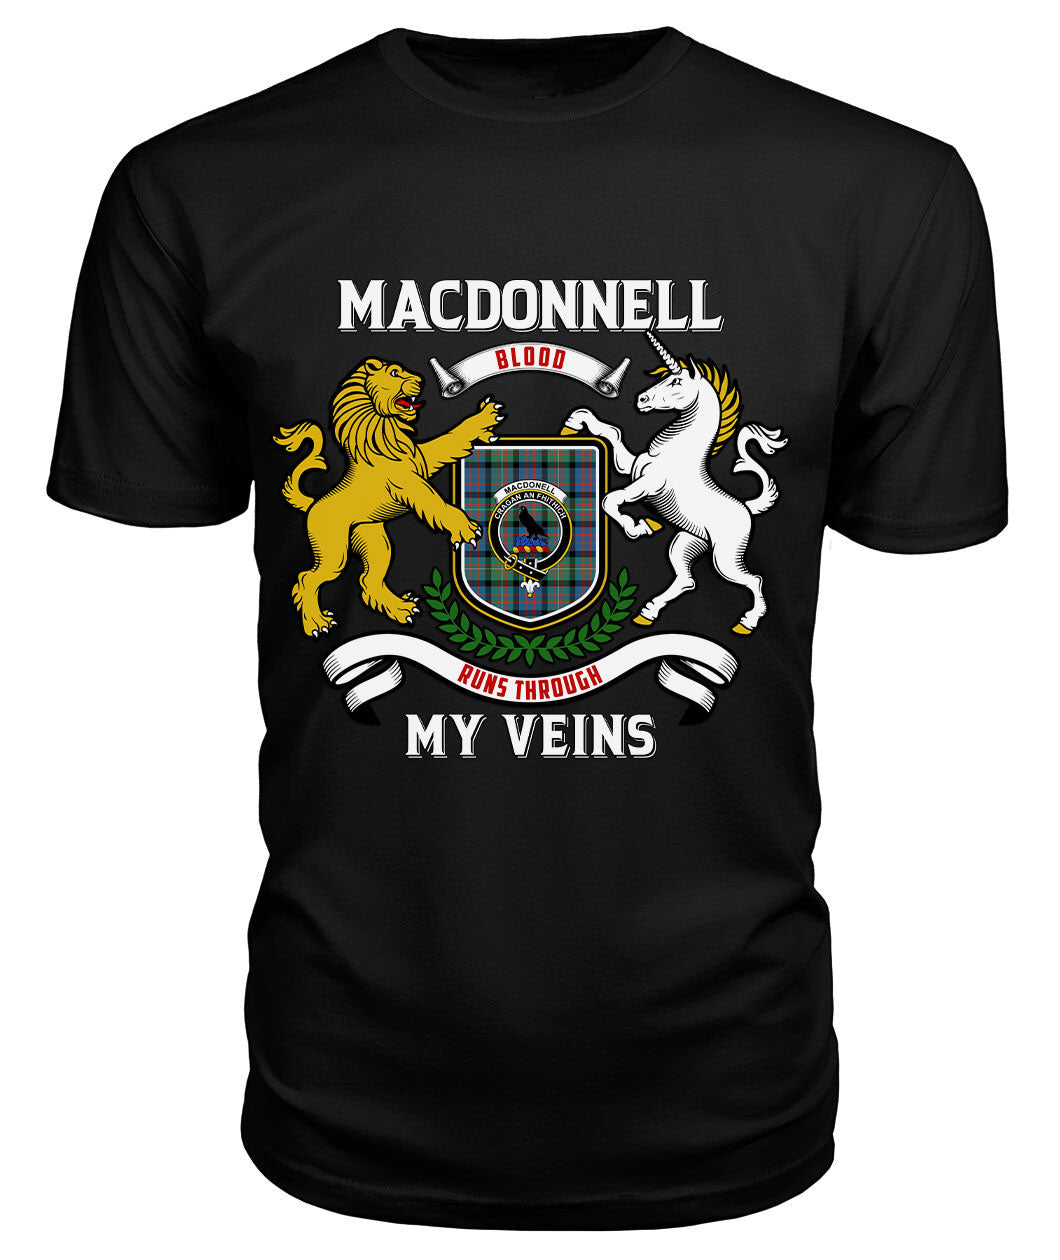 MacDonnell of Glengarry Ancient Tartan Crest 2D T-shirt - Blood Runs Through My Veins Style